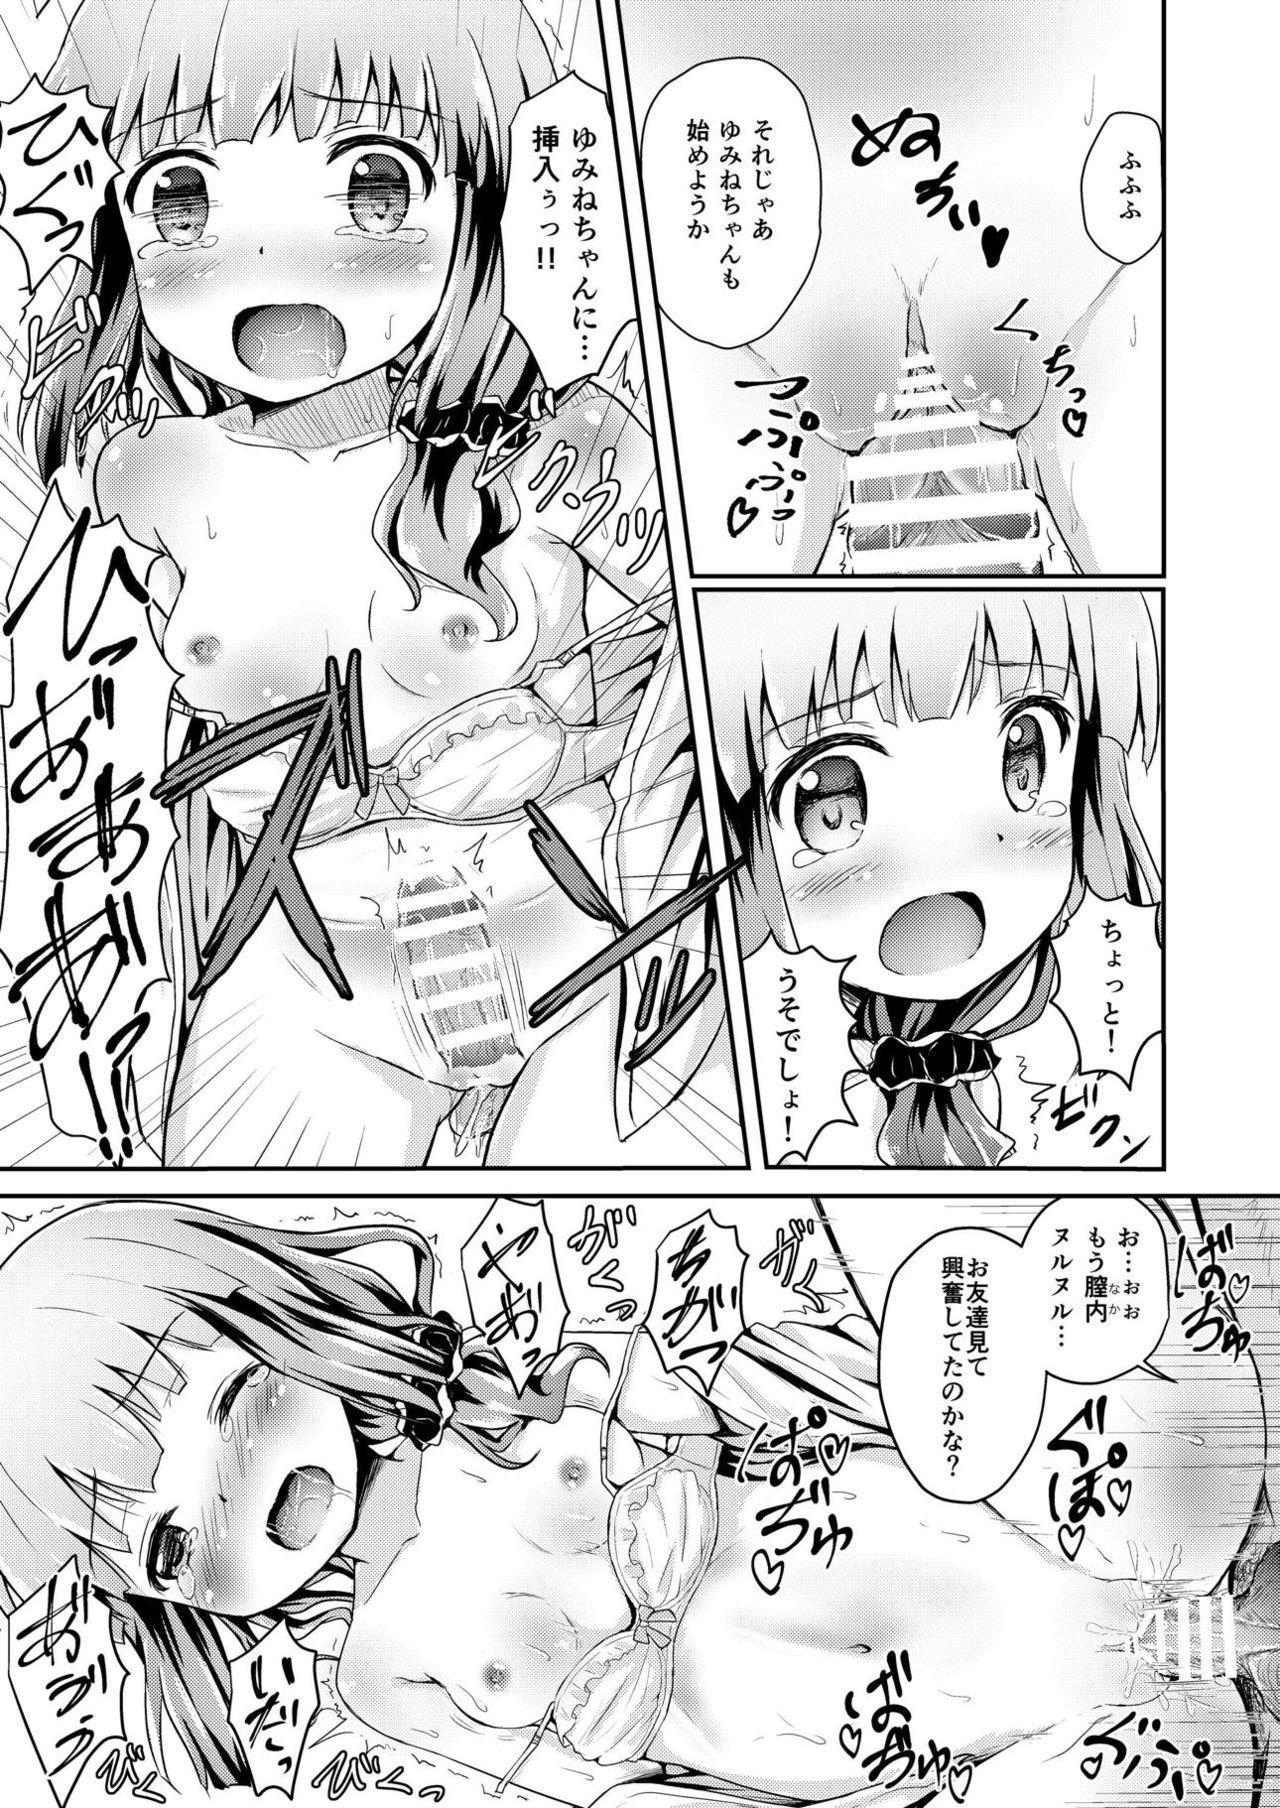 Breast Tamaki to Yumine vs Tanetsuke Oji-sama - Stella no mahou Animation - Page 10